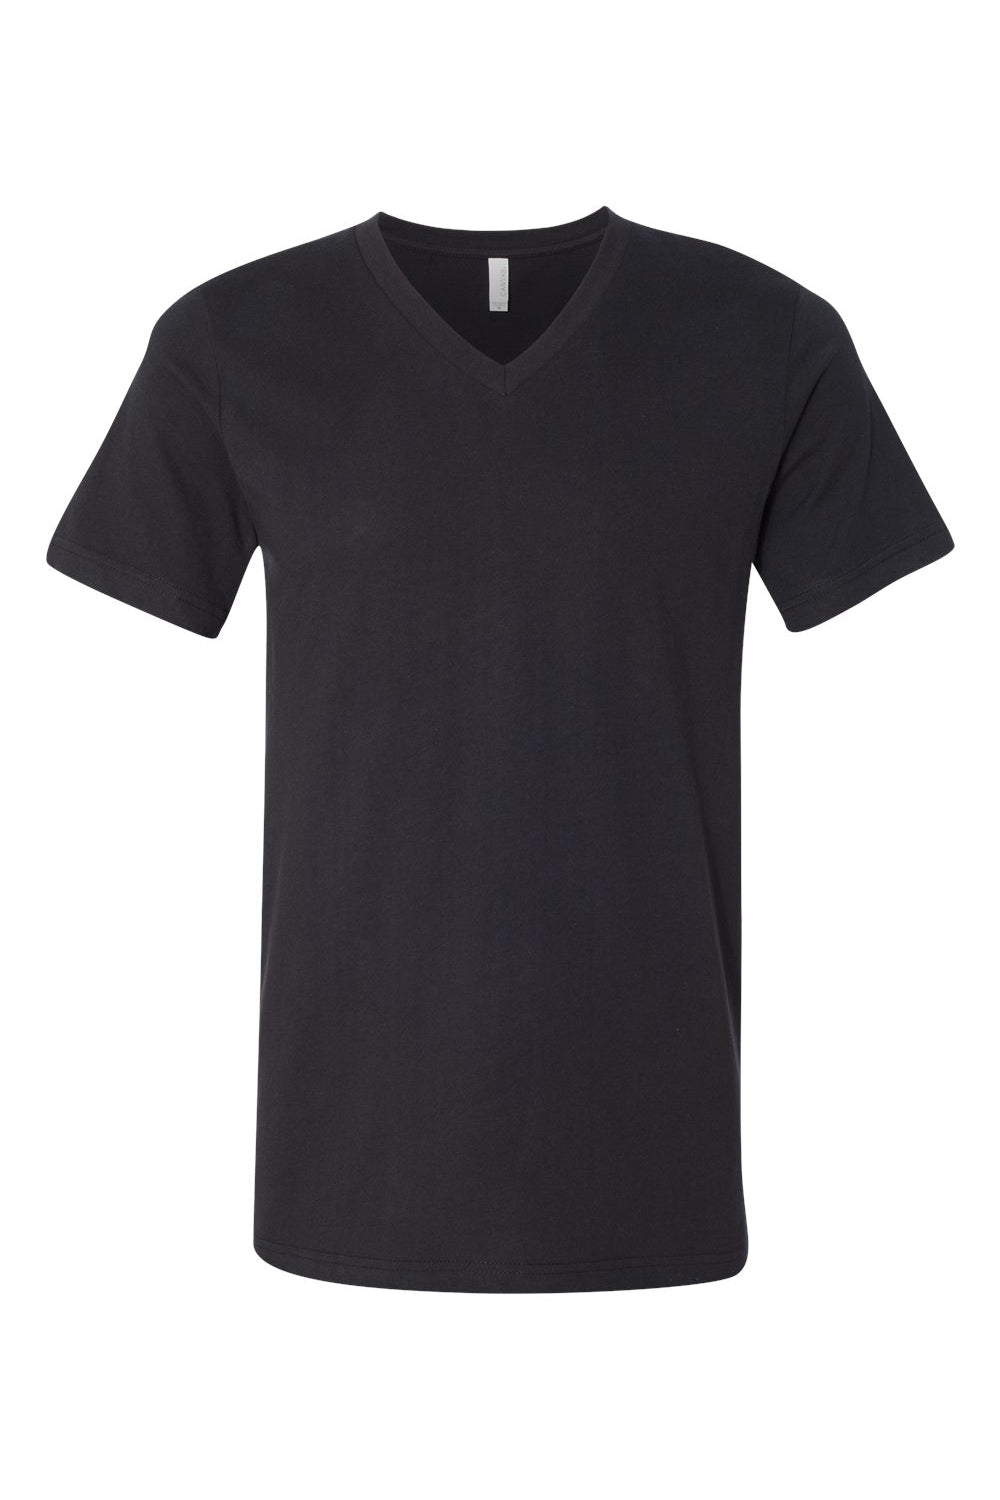 Bella + Canvas BC3005/3005/3655C Mens Jersey Short Sleeve V-Neck T-Shirt Vintage Black Flat Front